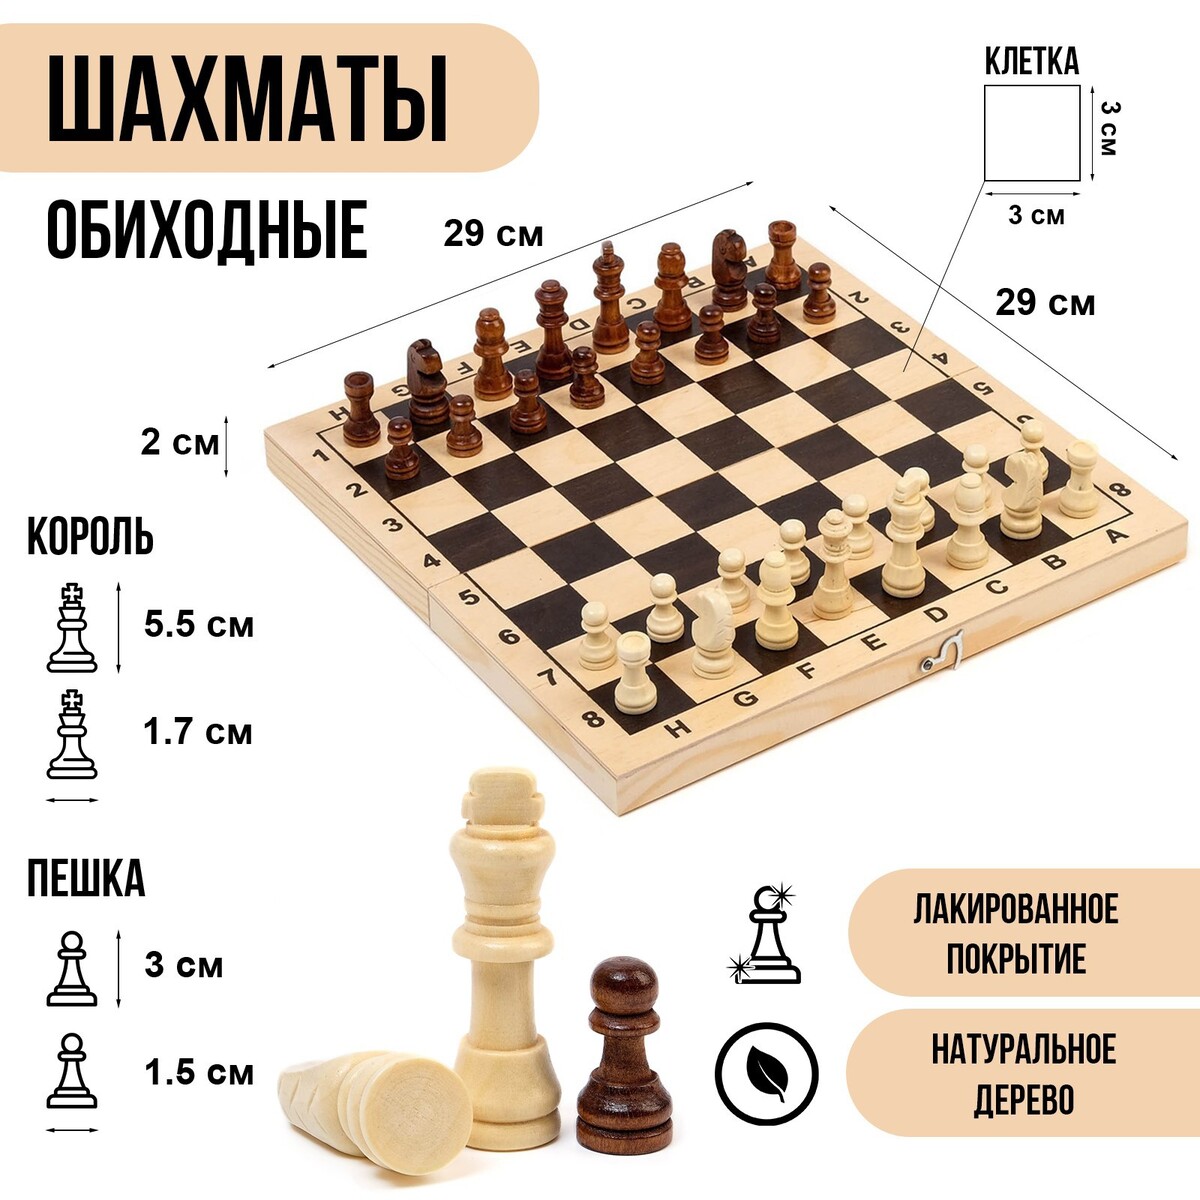 Шахматы деревянные обиходные 29 х 29 см, король h-5.5 см, пешка h-3 см шахматы развивающий учебник для детей и родителей